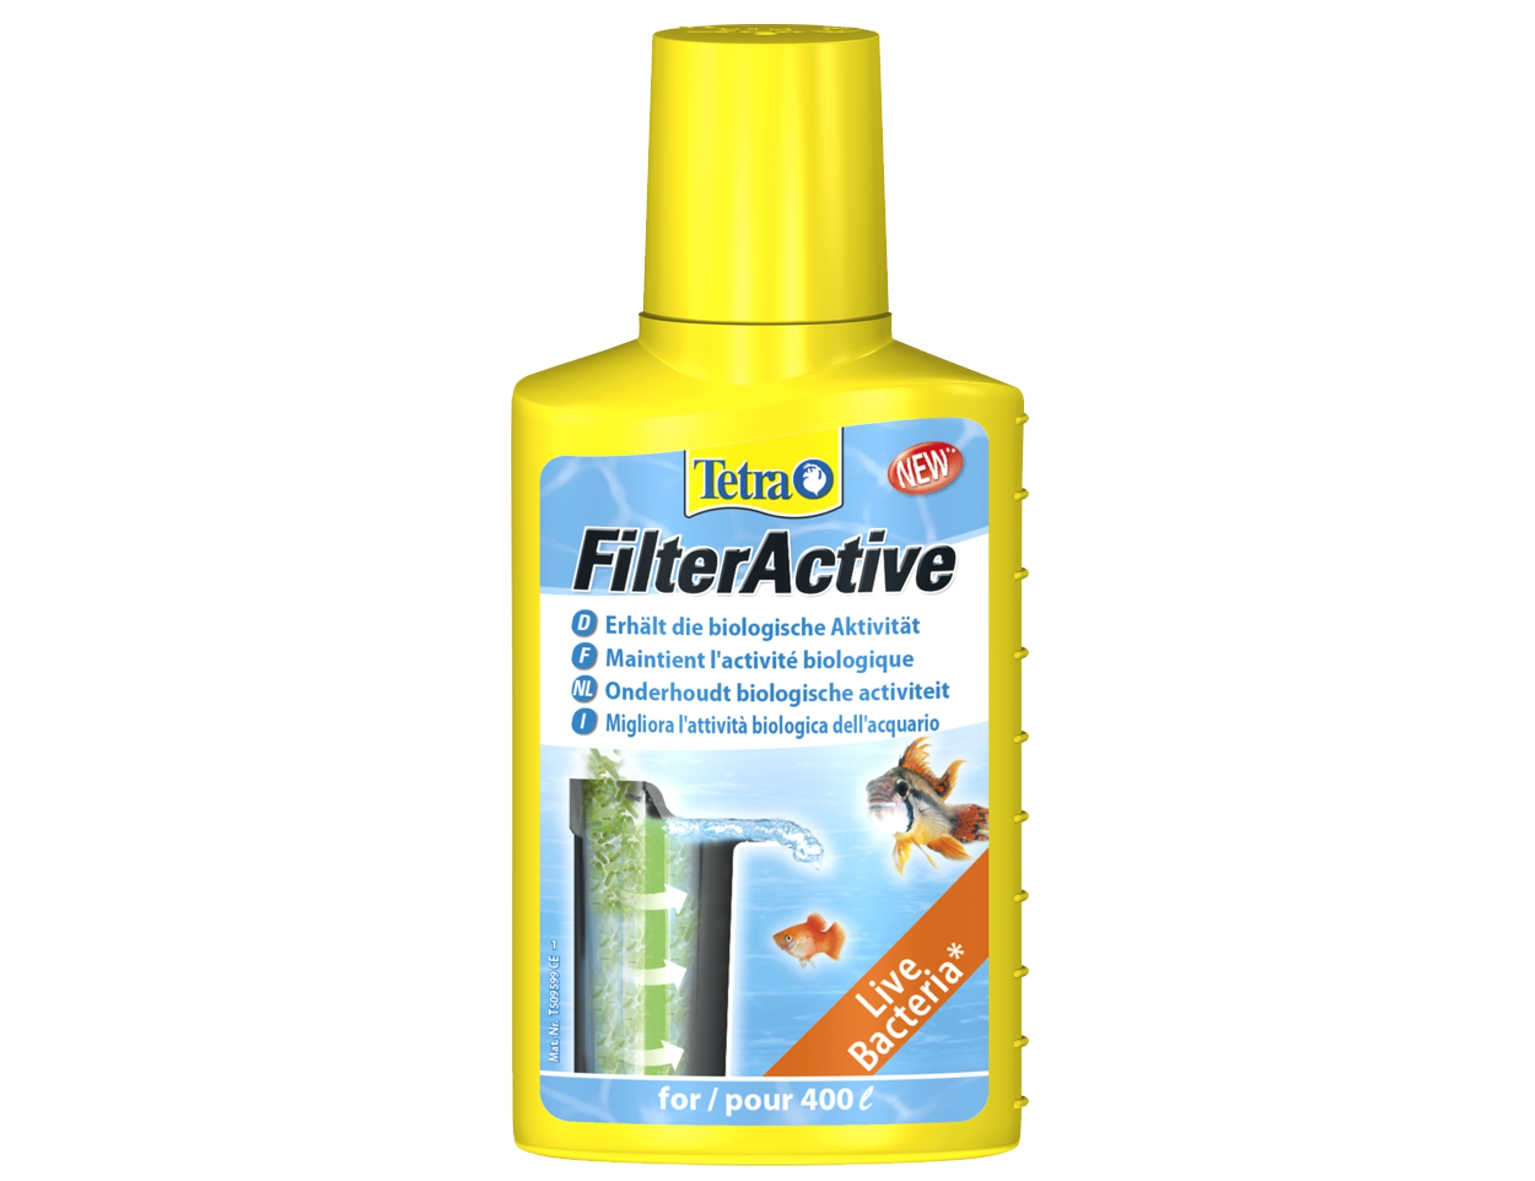 Tetra FilterActive 100ml